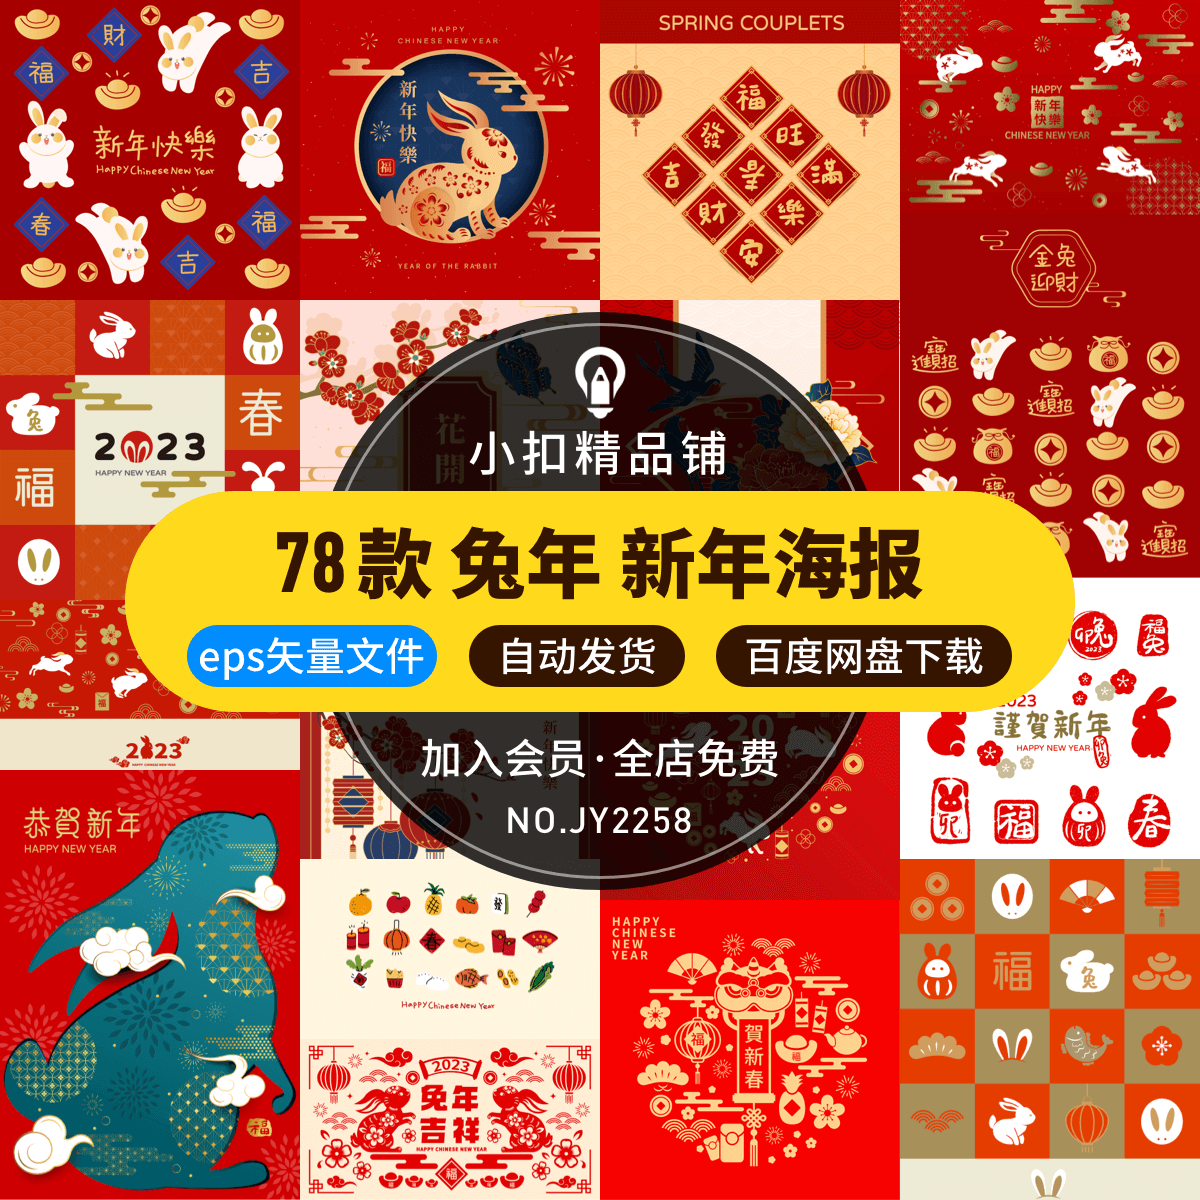 2023年兔年大吉恭贺新春新年快乐创意插画海报图案AI矢量设计素材